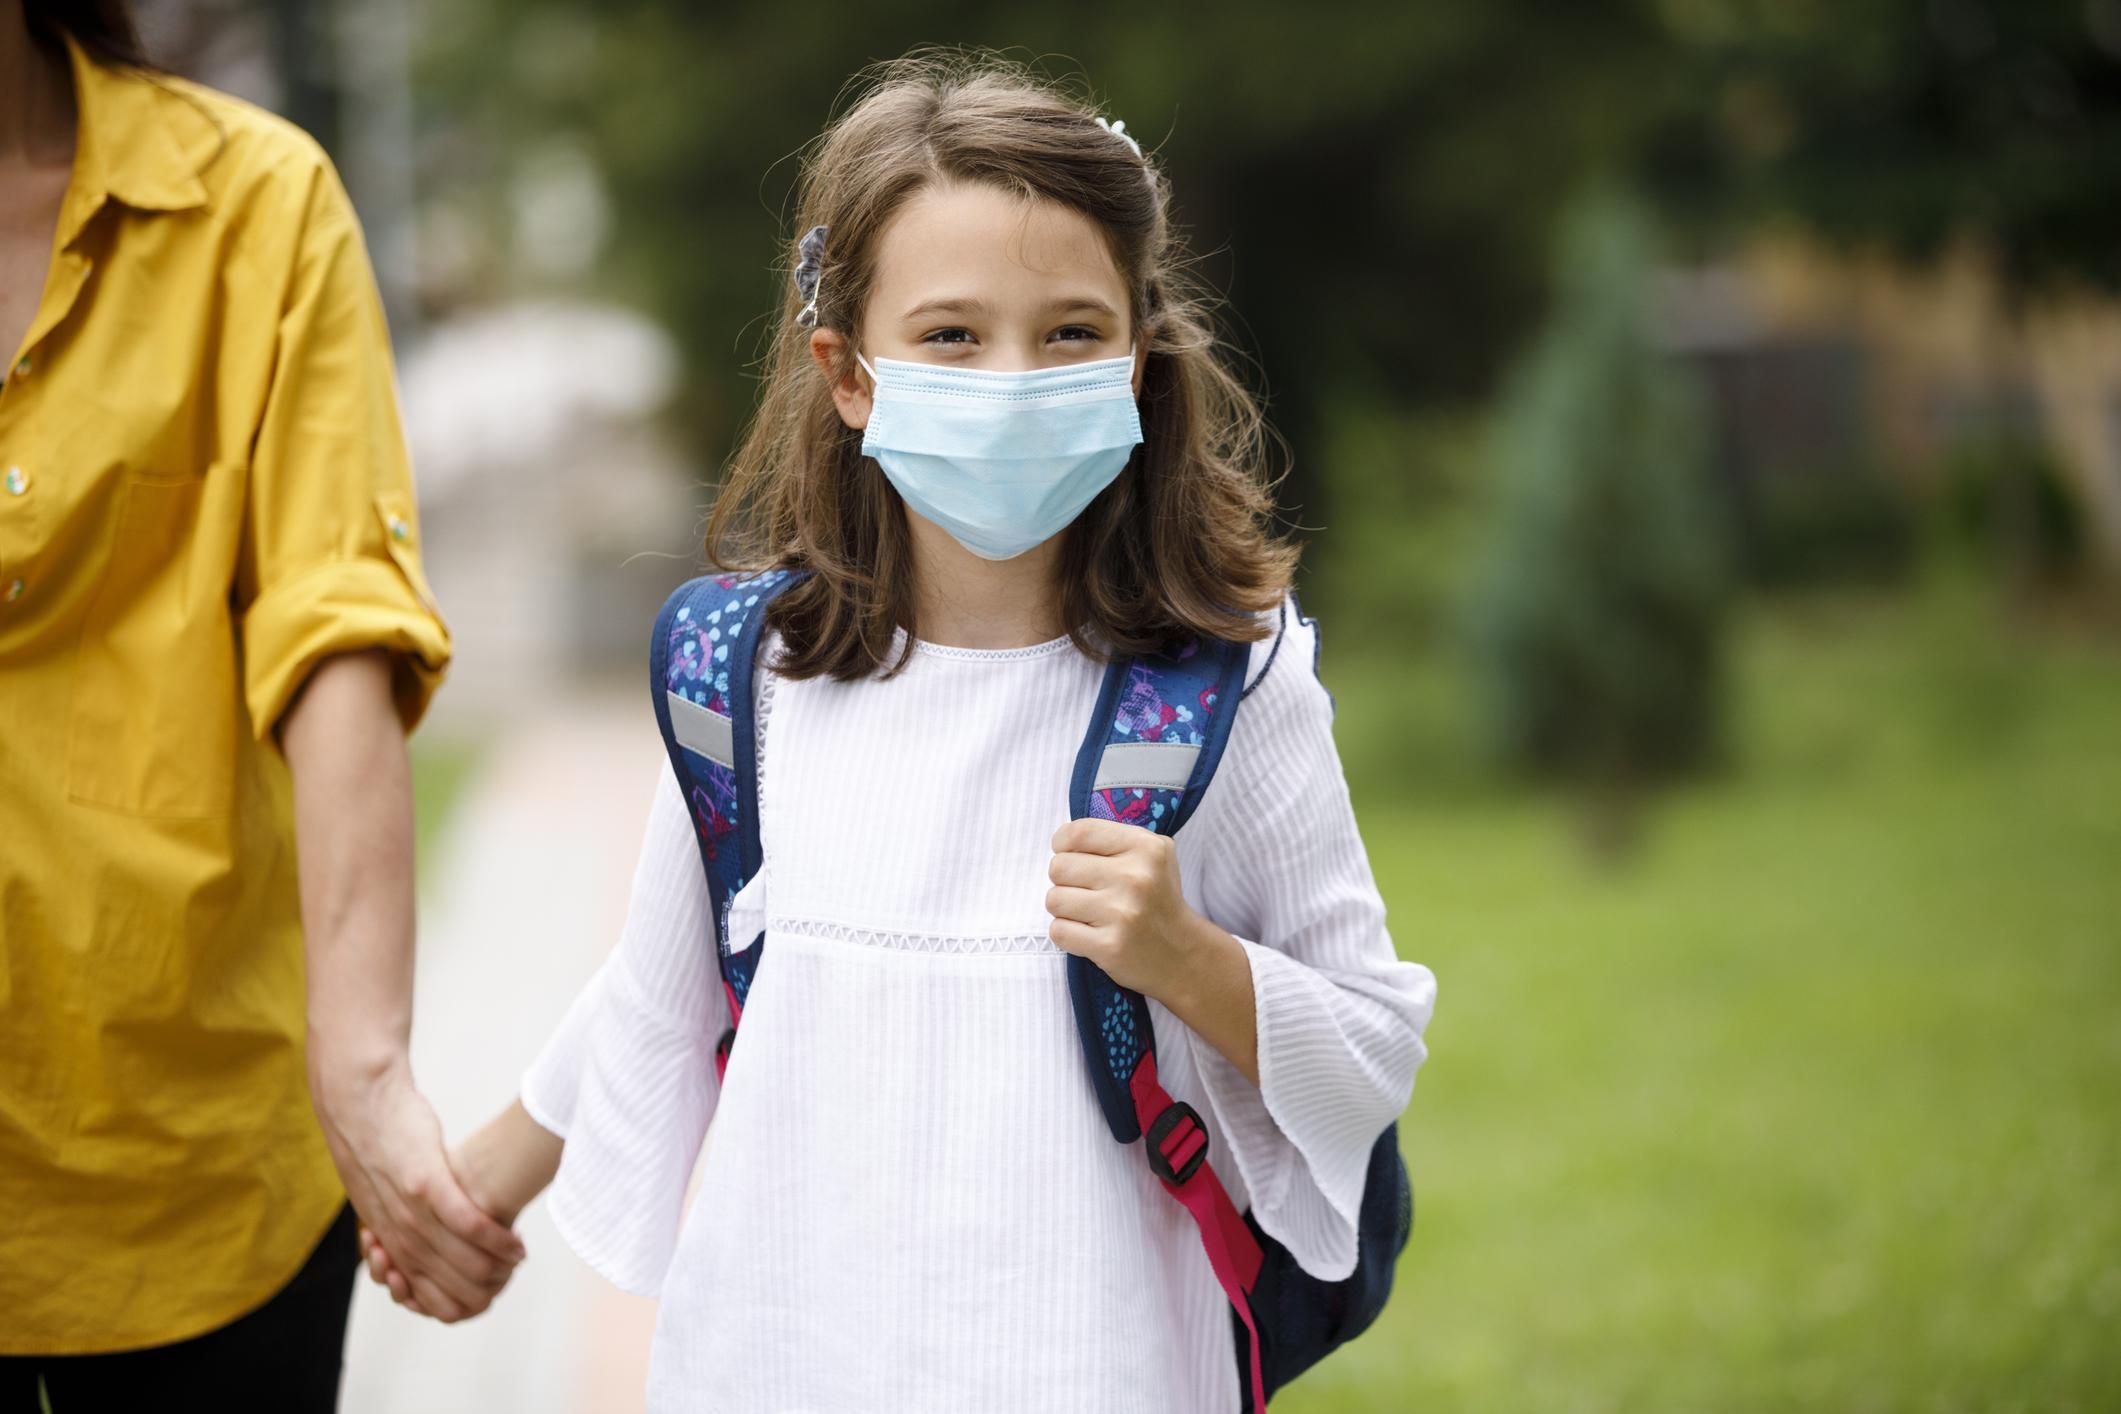 Діти більше ризикують заразитися COVID-19 вдома, ніж в школі, – дослідження